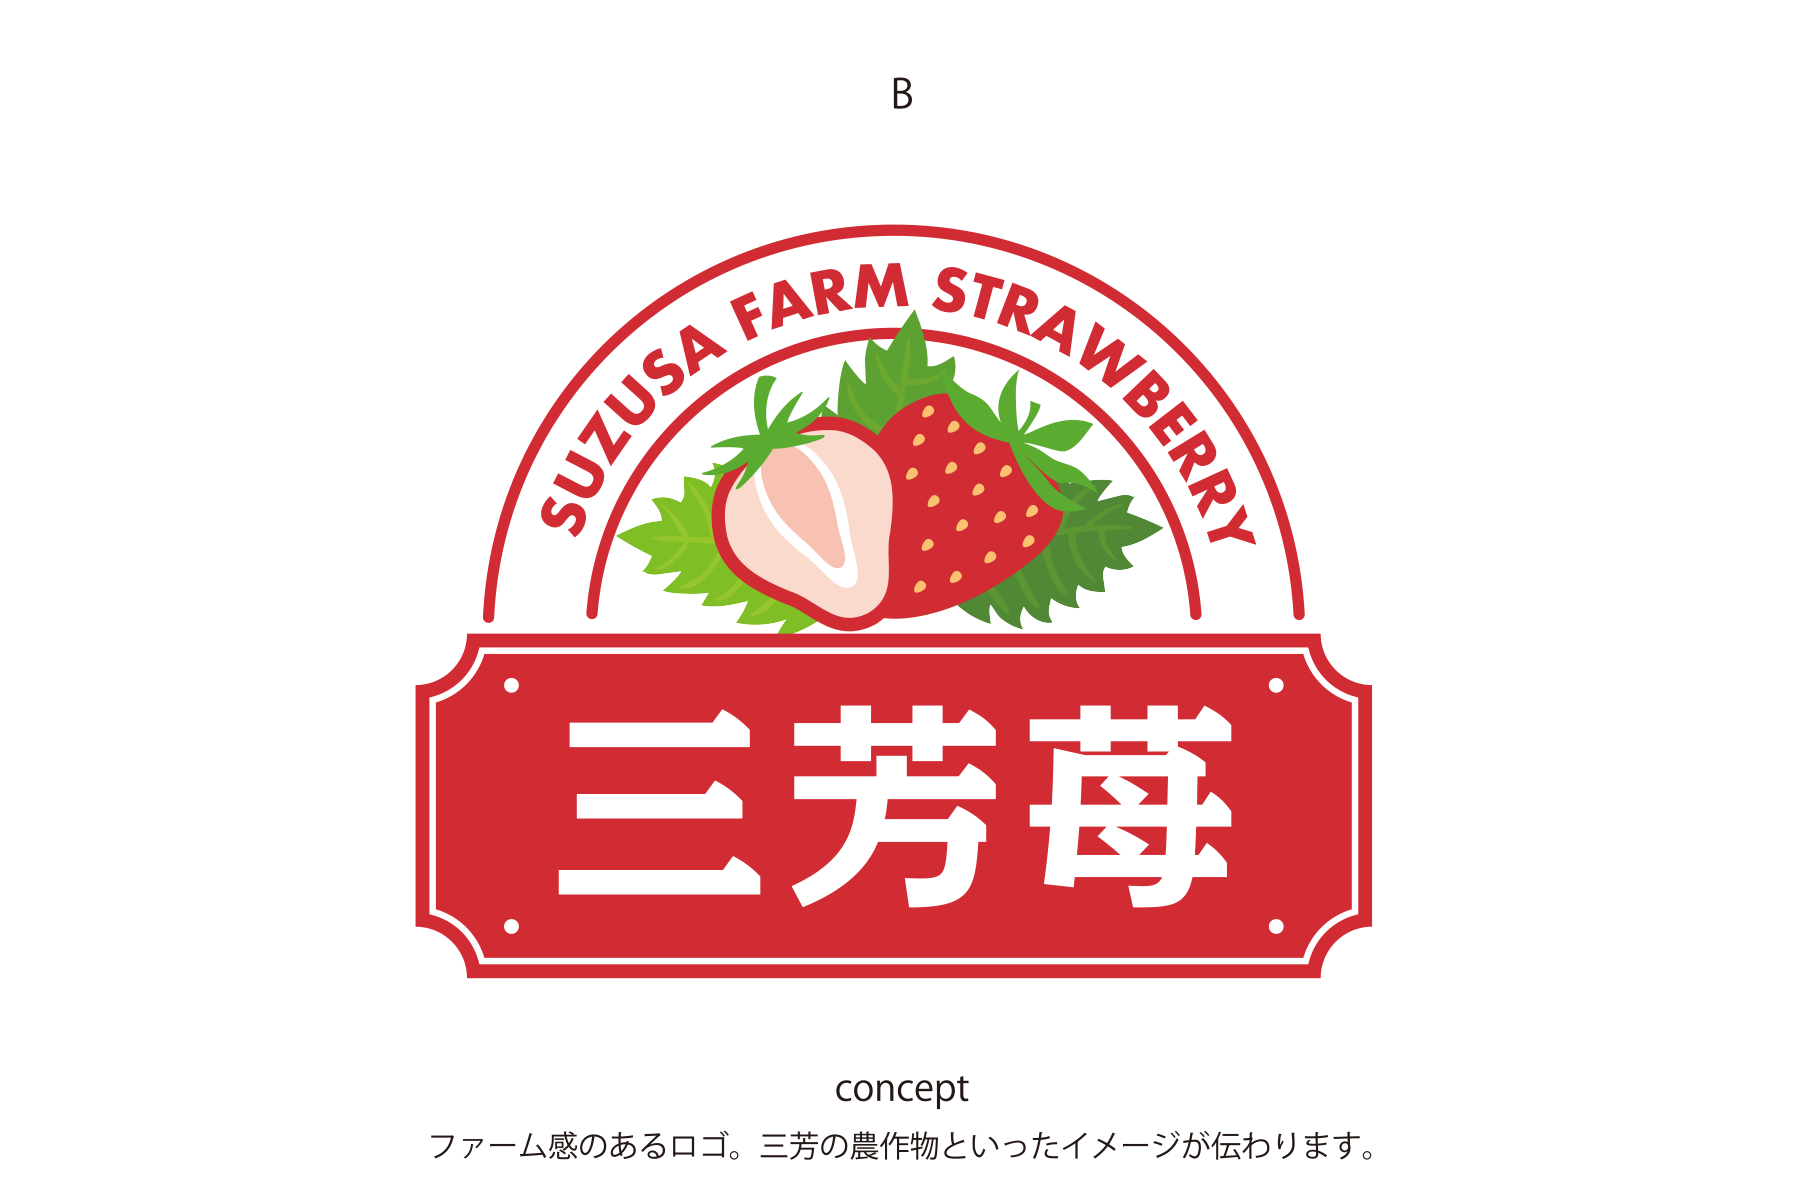 イチゴ農家の新ブランド「三芳苺®」